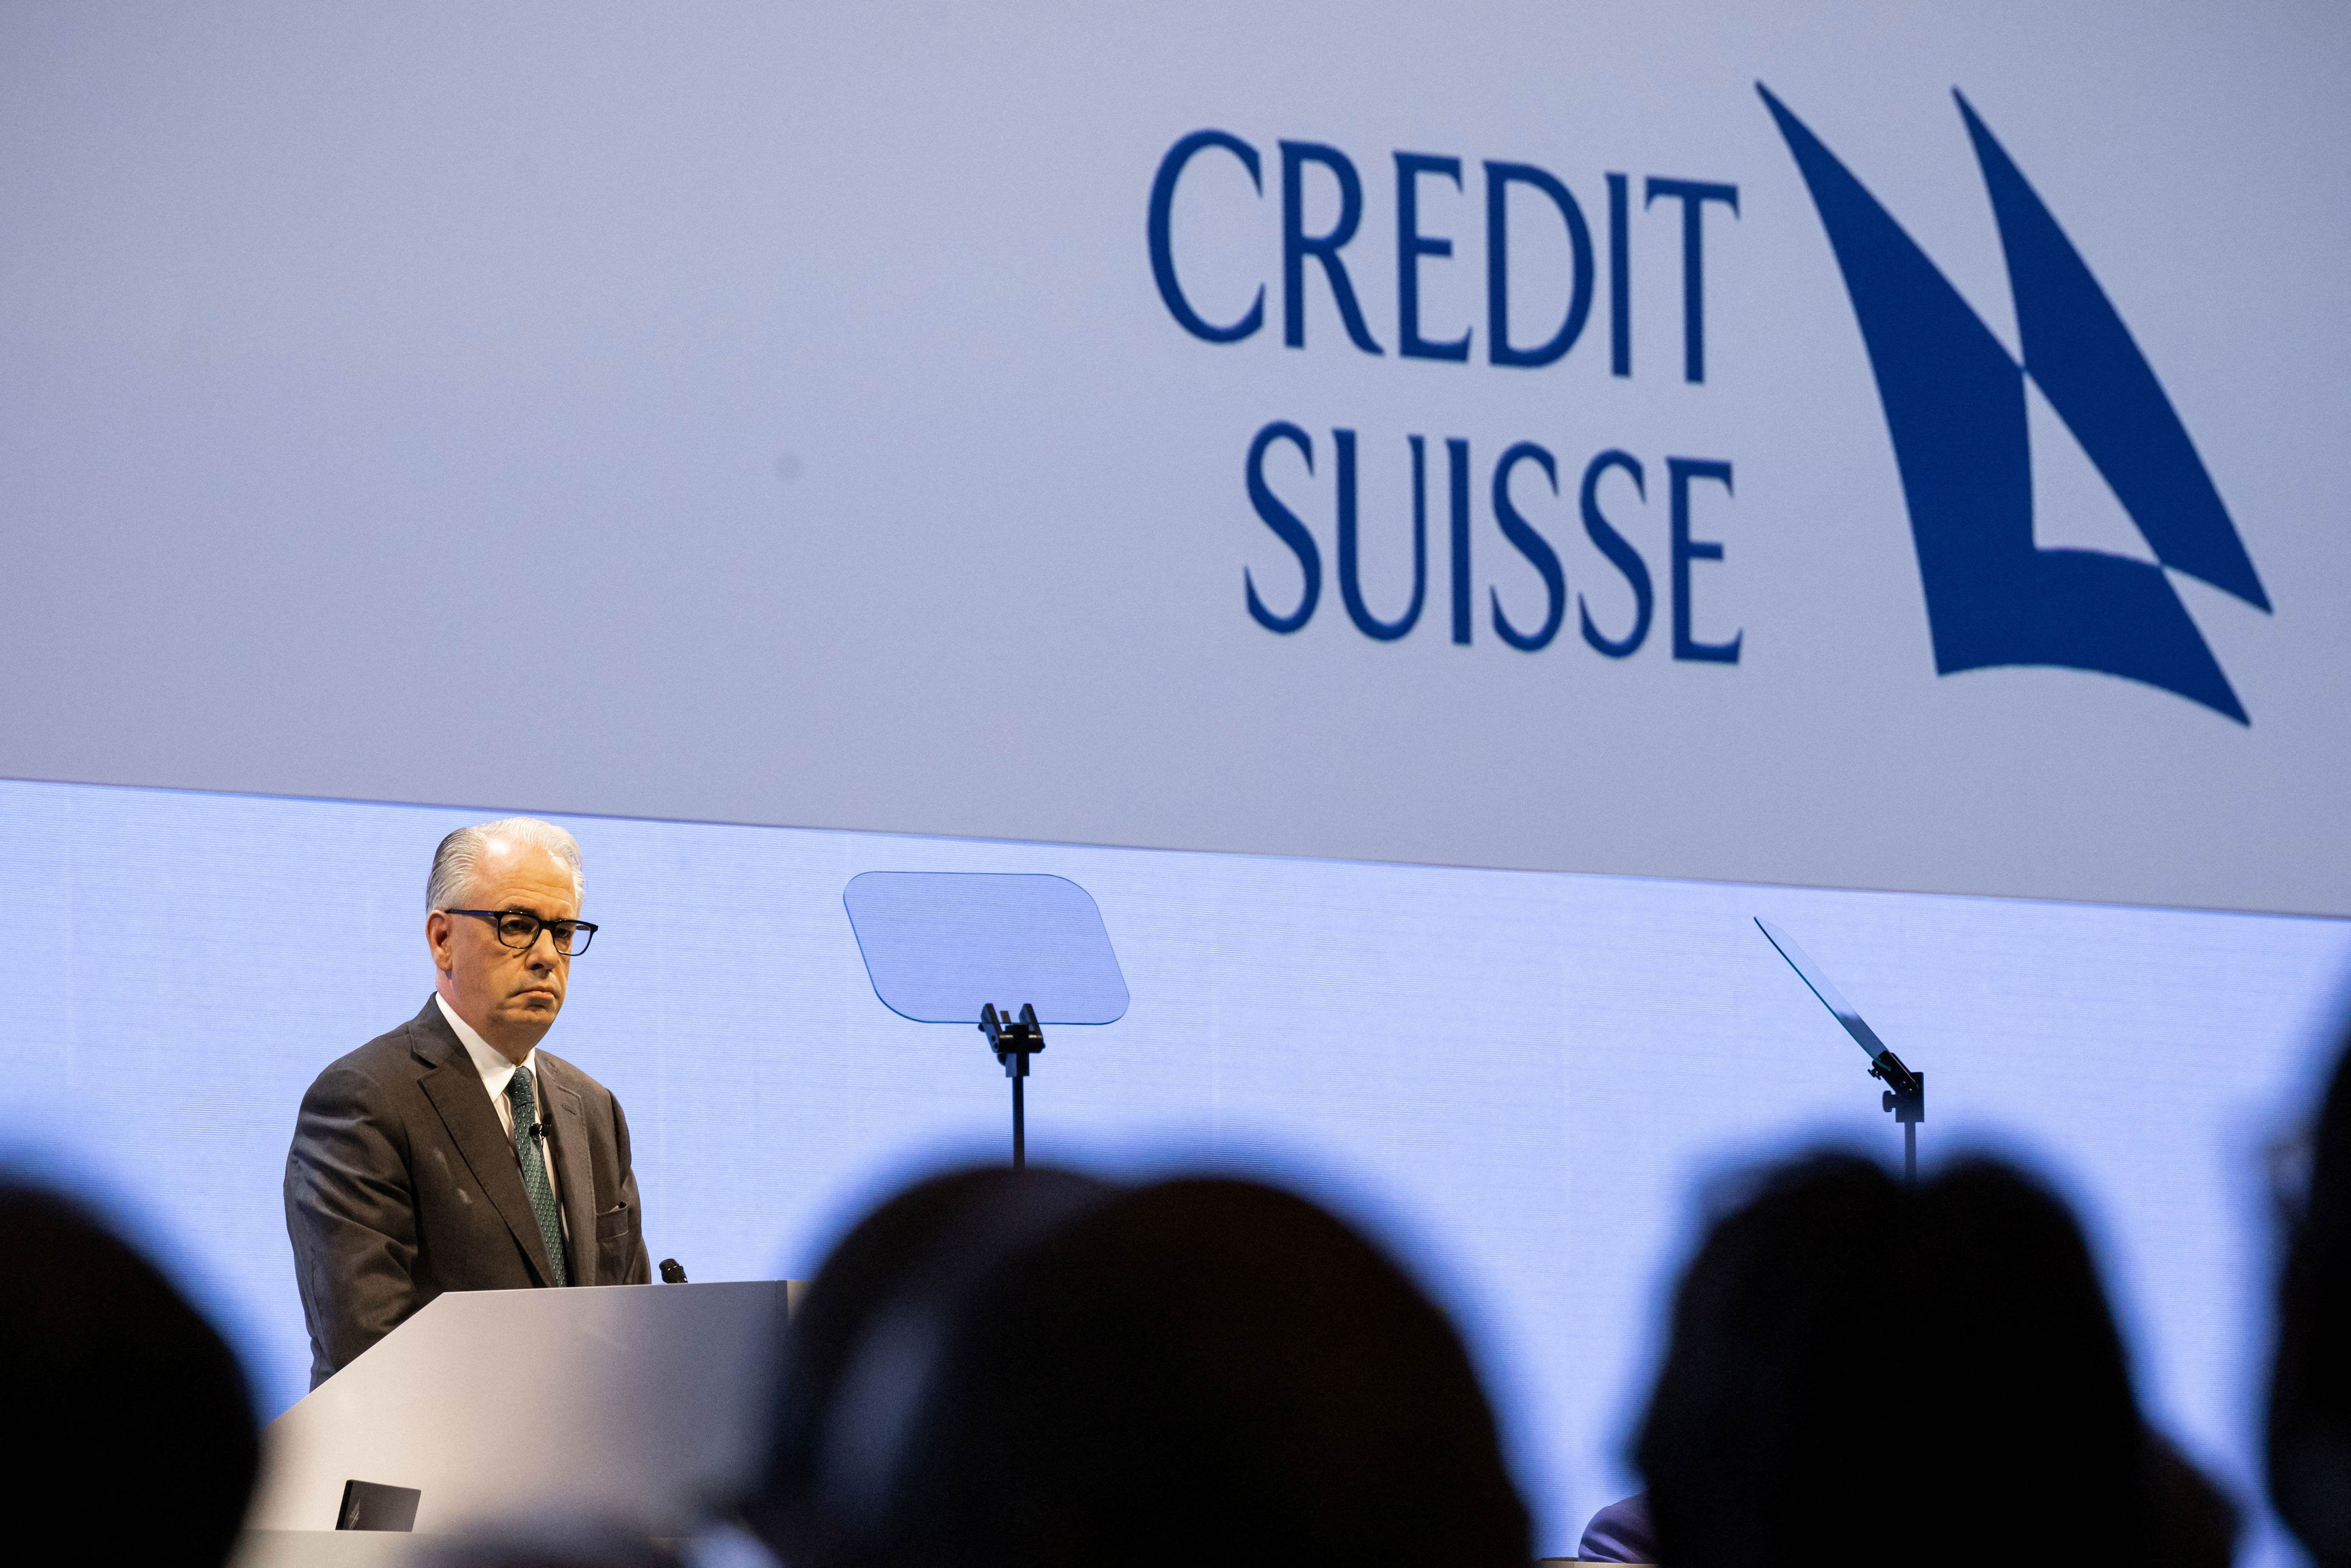 der tag der wahrheit für die credit suisse rückt näher: was passiert nun mit den letzten cs-topmanagern bei der ubs?